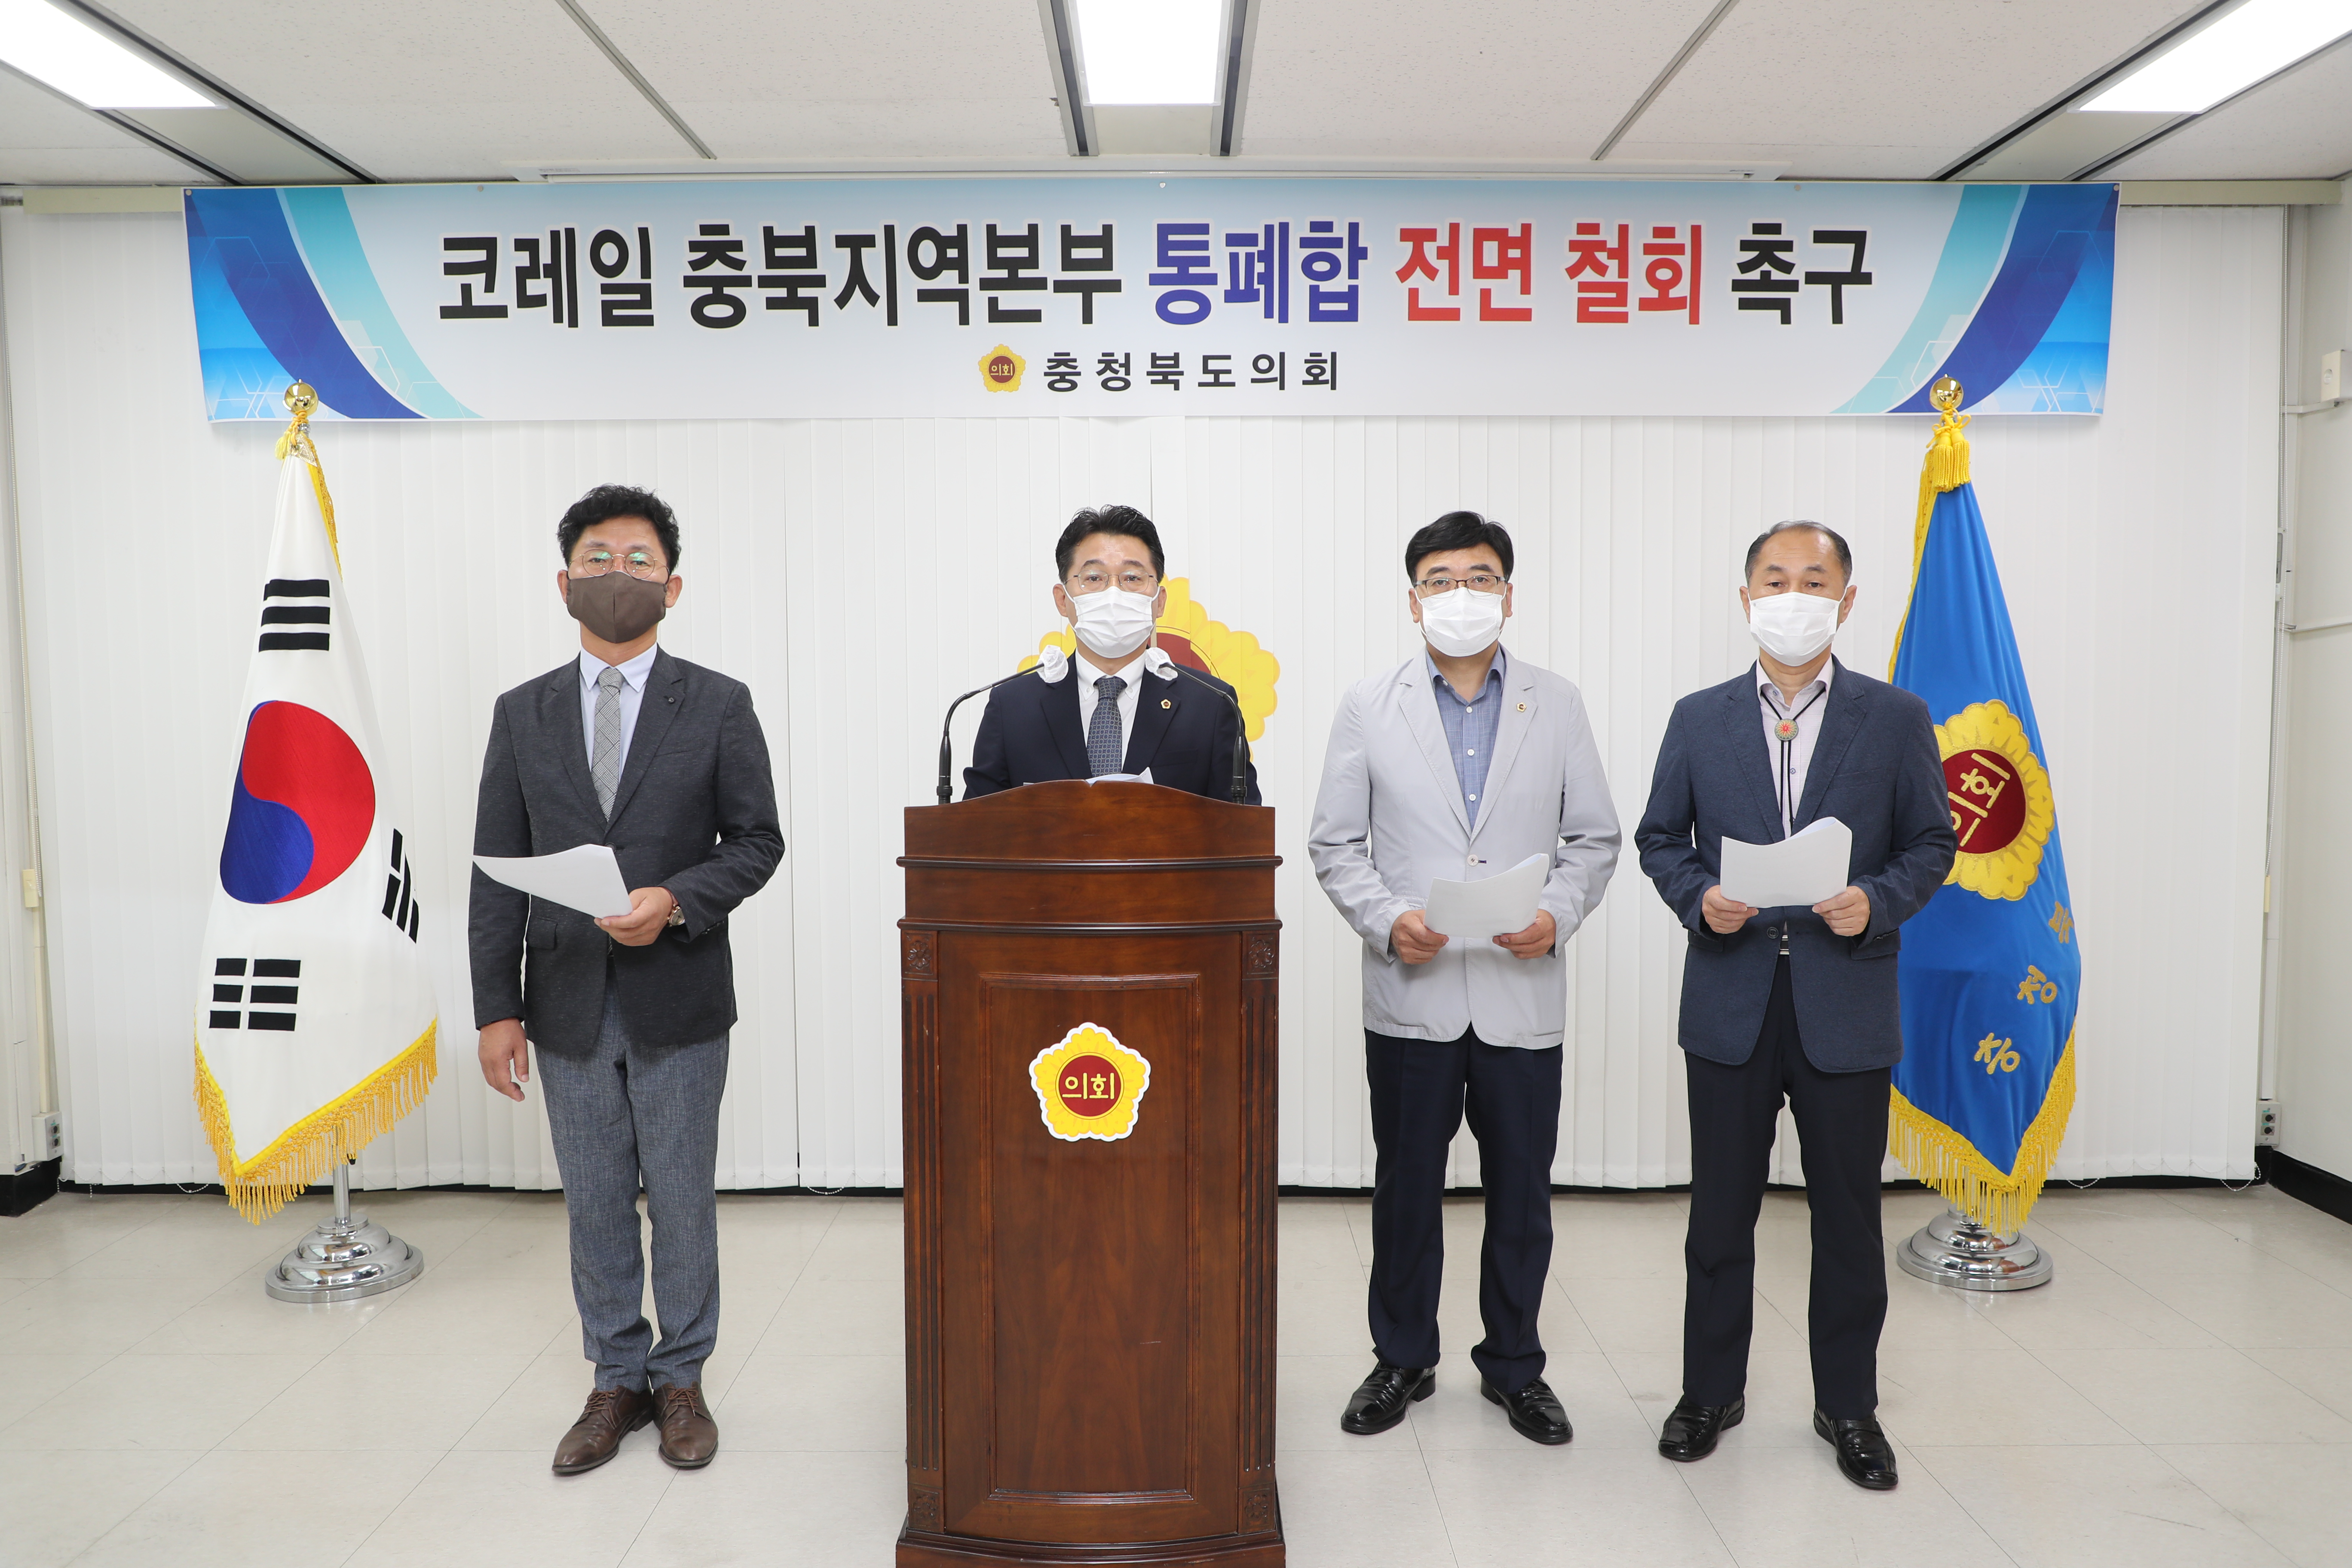 코레일 충북본부 통폐합 철회 촉구 성명서 발표 - 2